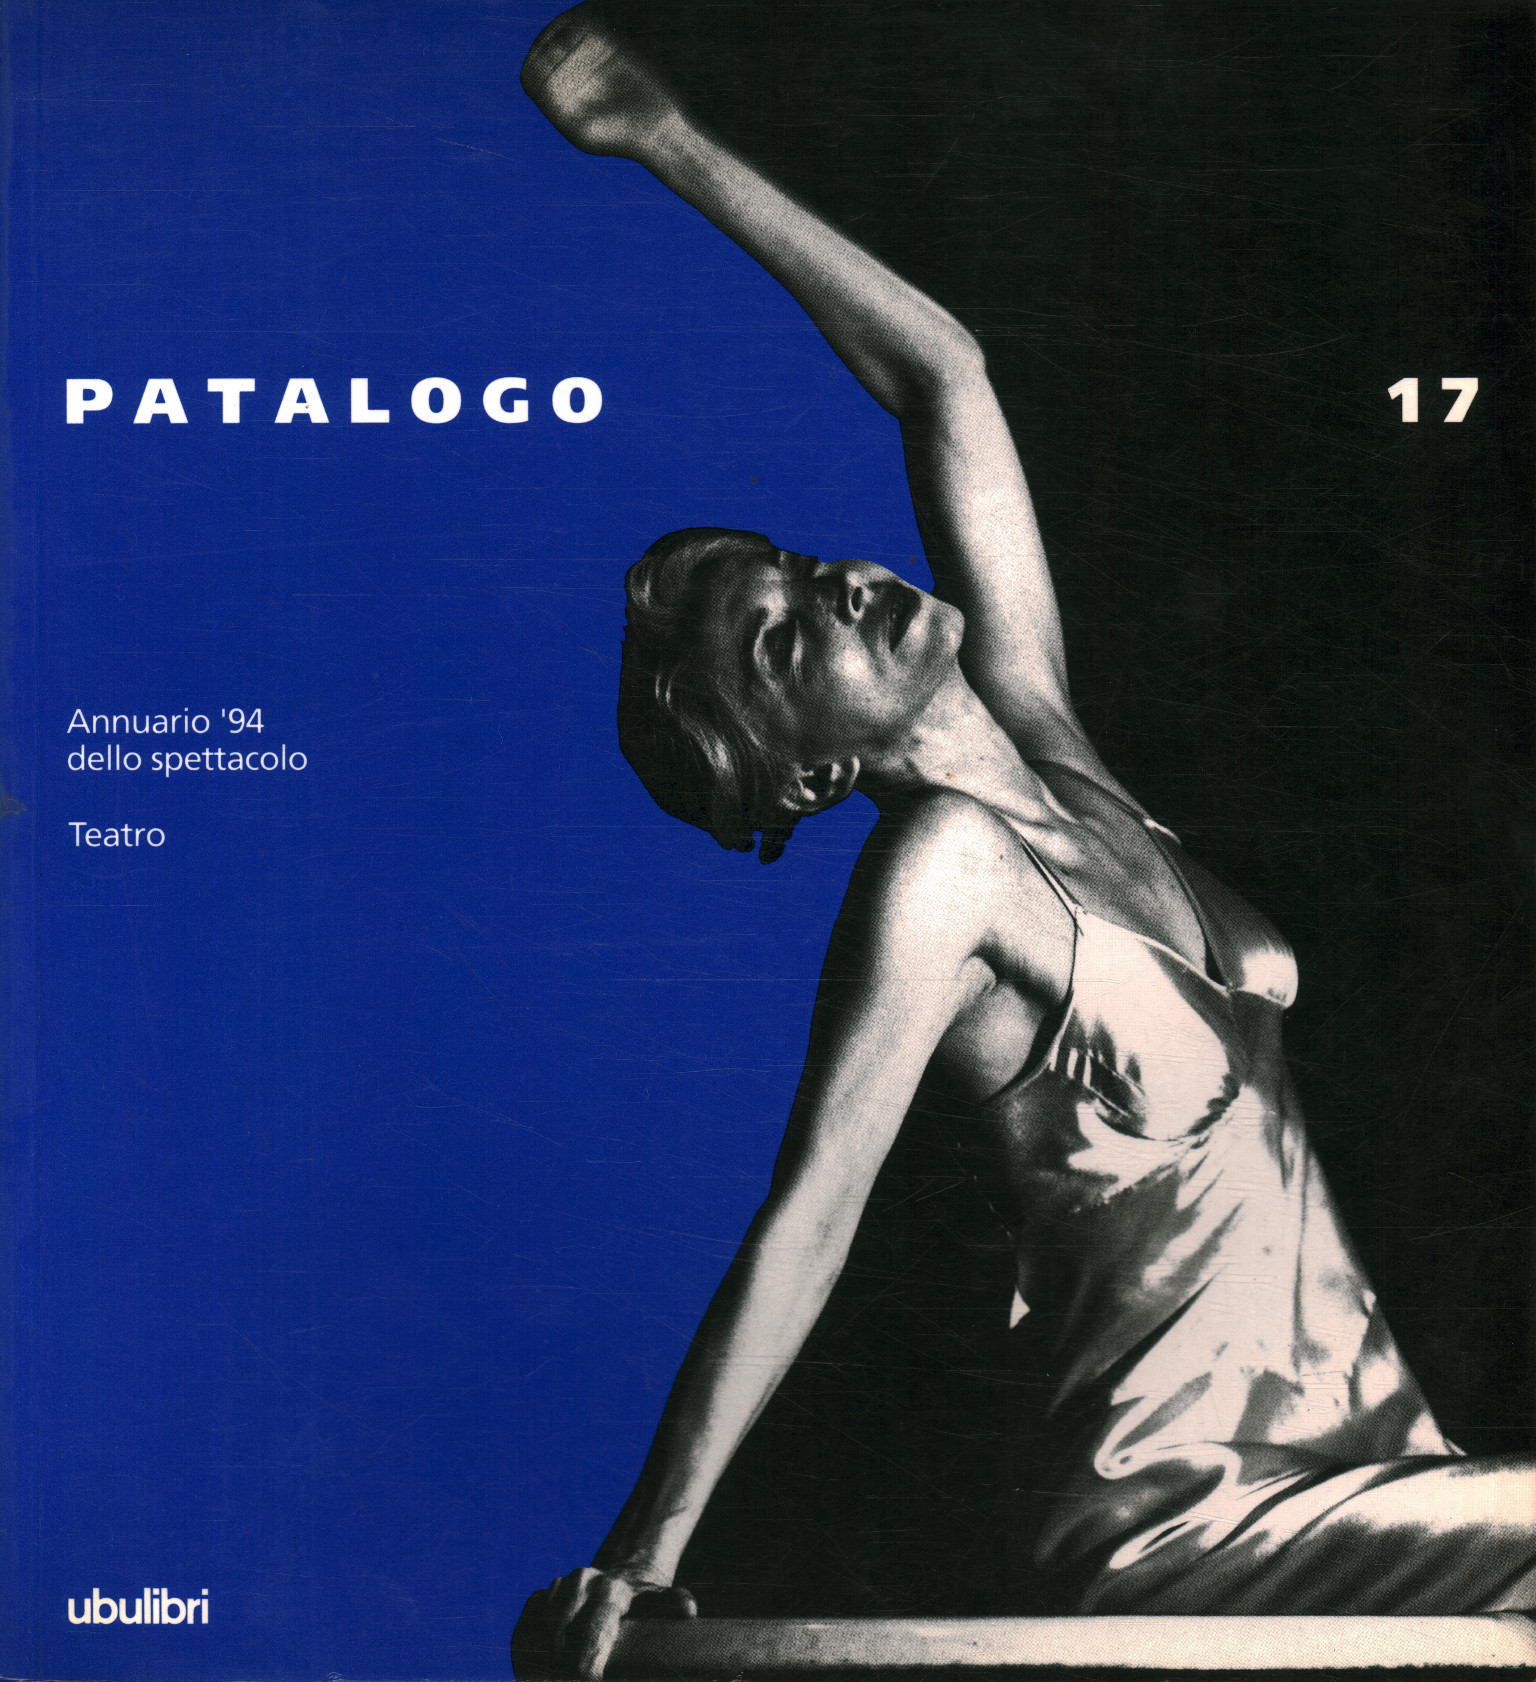 The Patologo seventeen